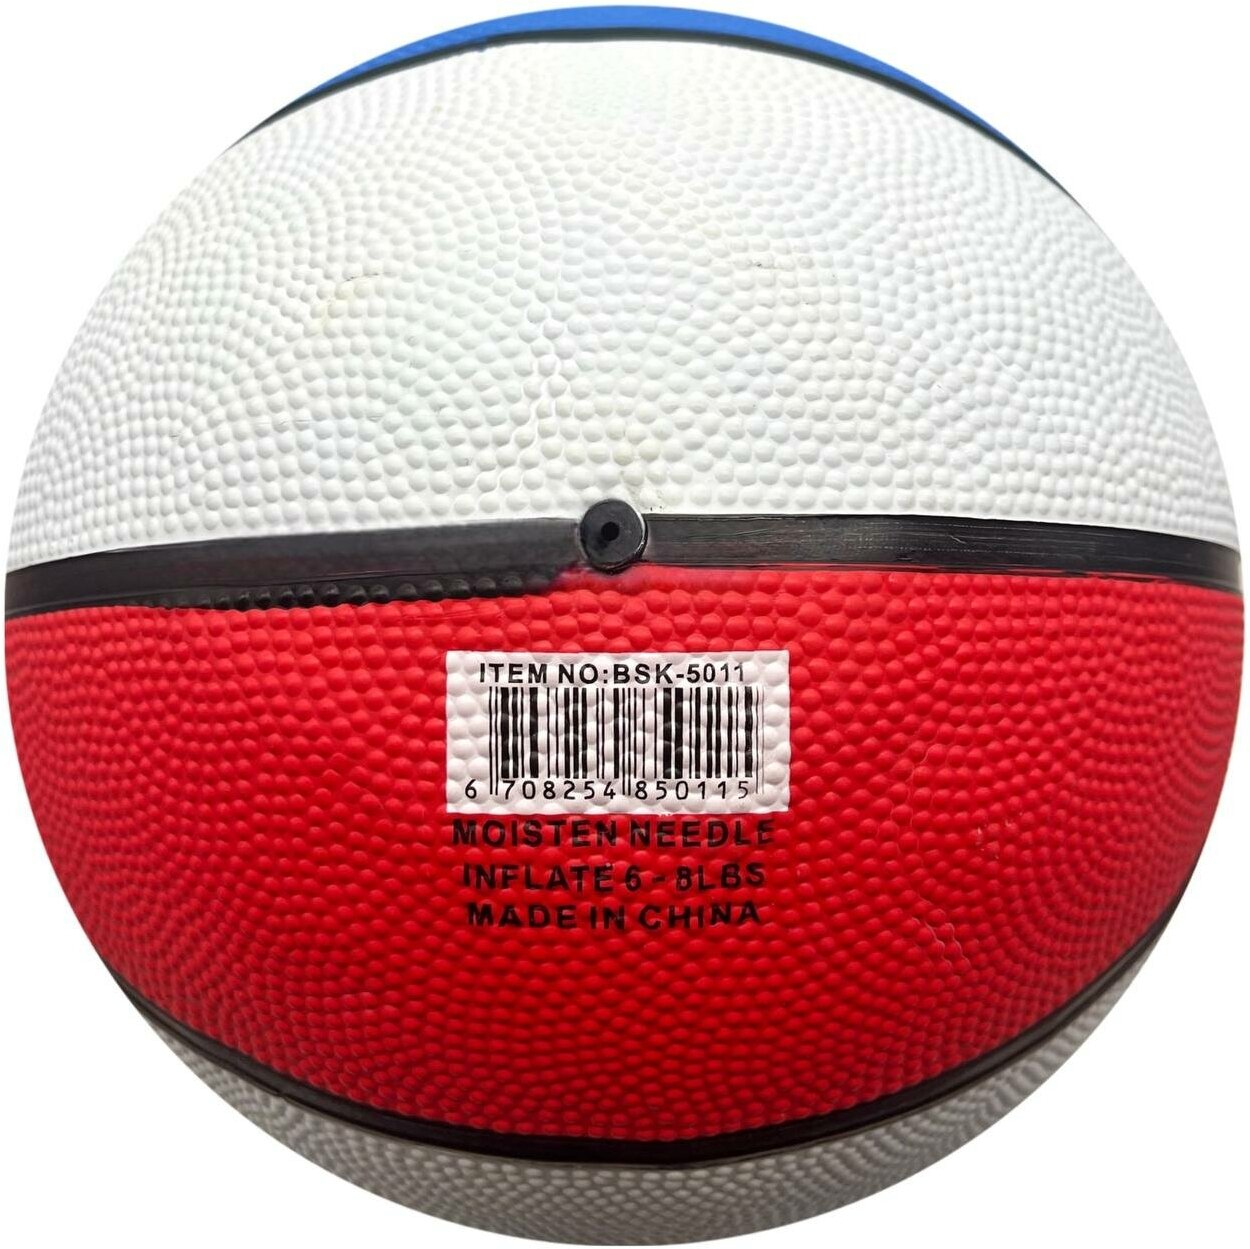 Баскетбольный мяч REGAIL №5